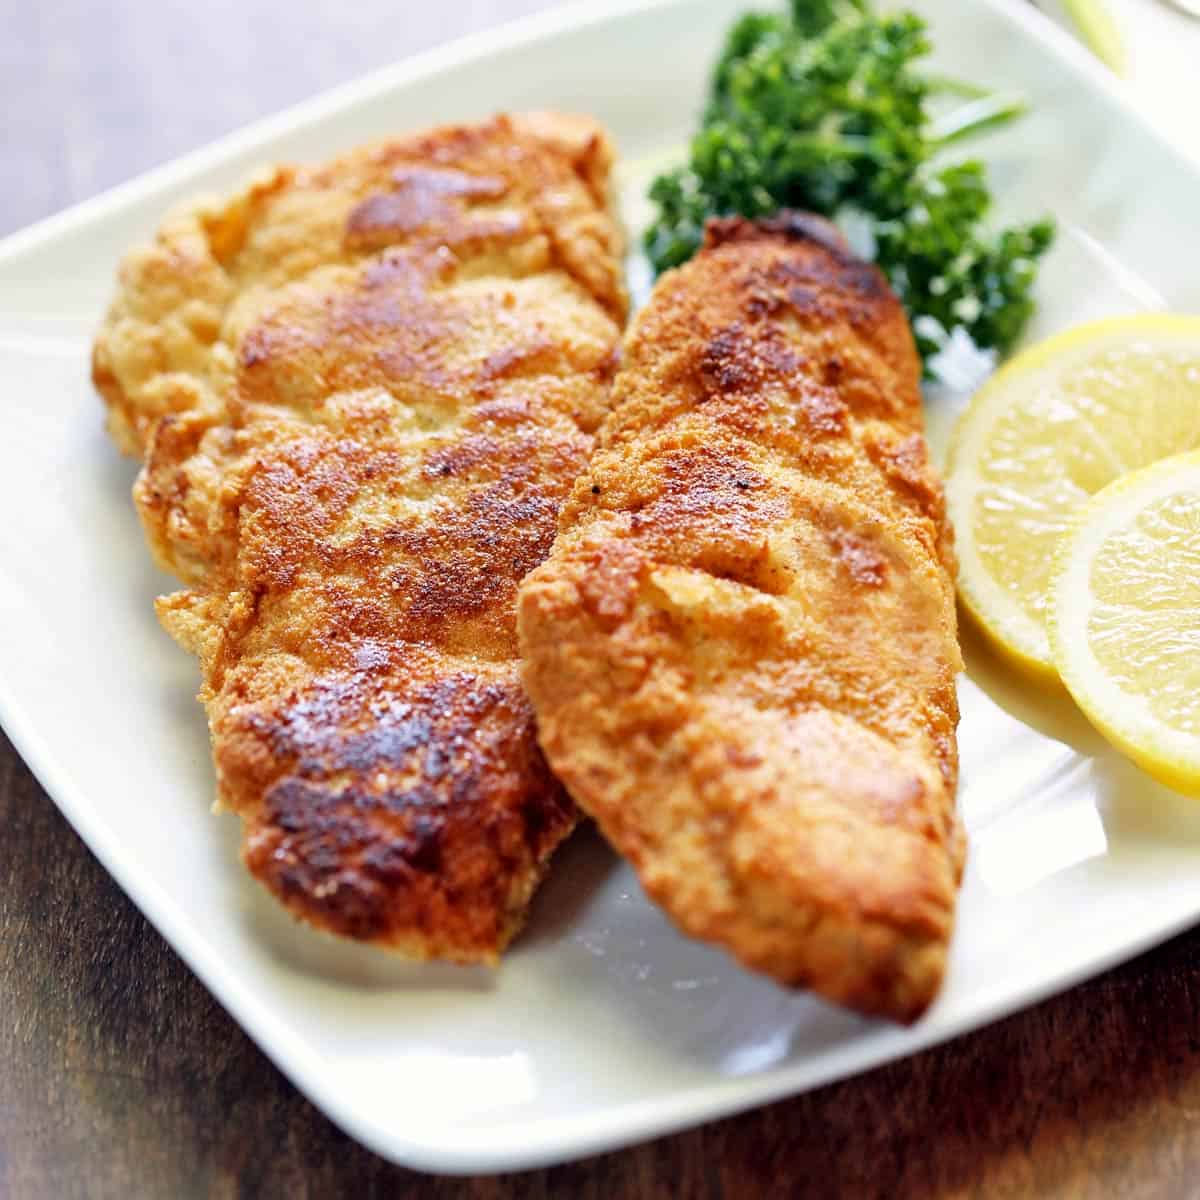 https://healthyrecipesblogs.com/wp-content/uploads/2017/09/fried-fish-featured-2022.jpg